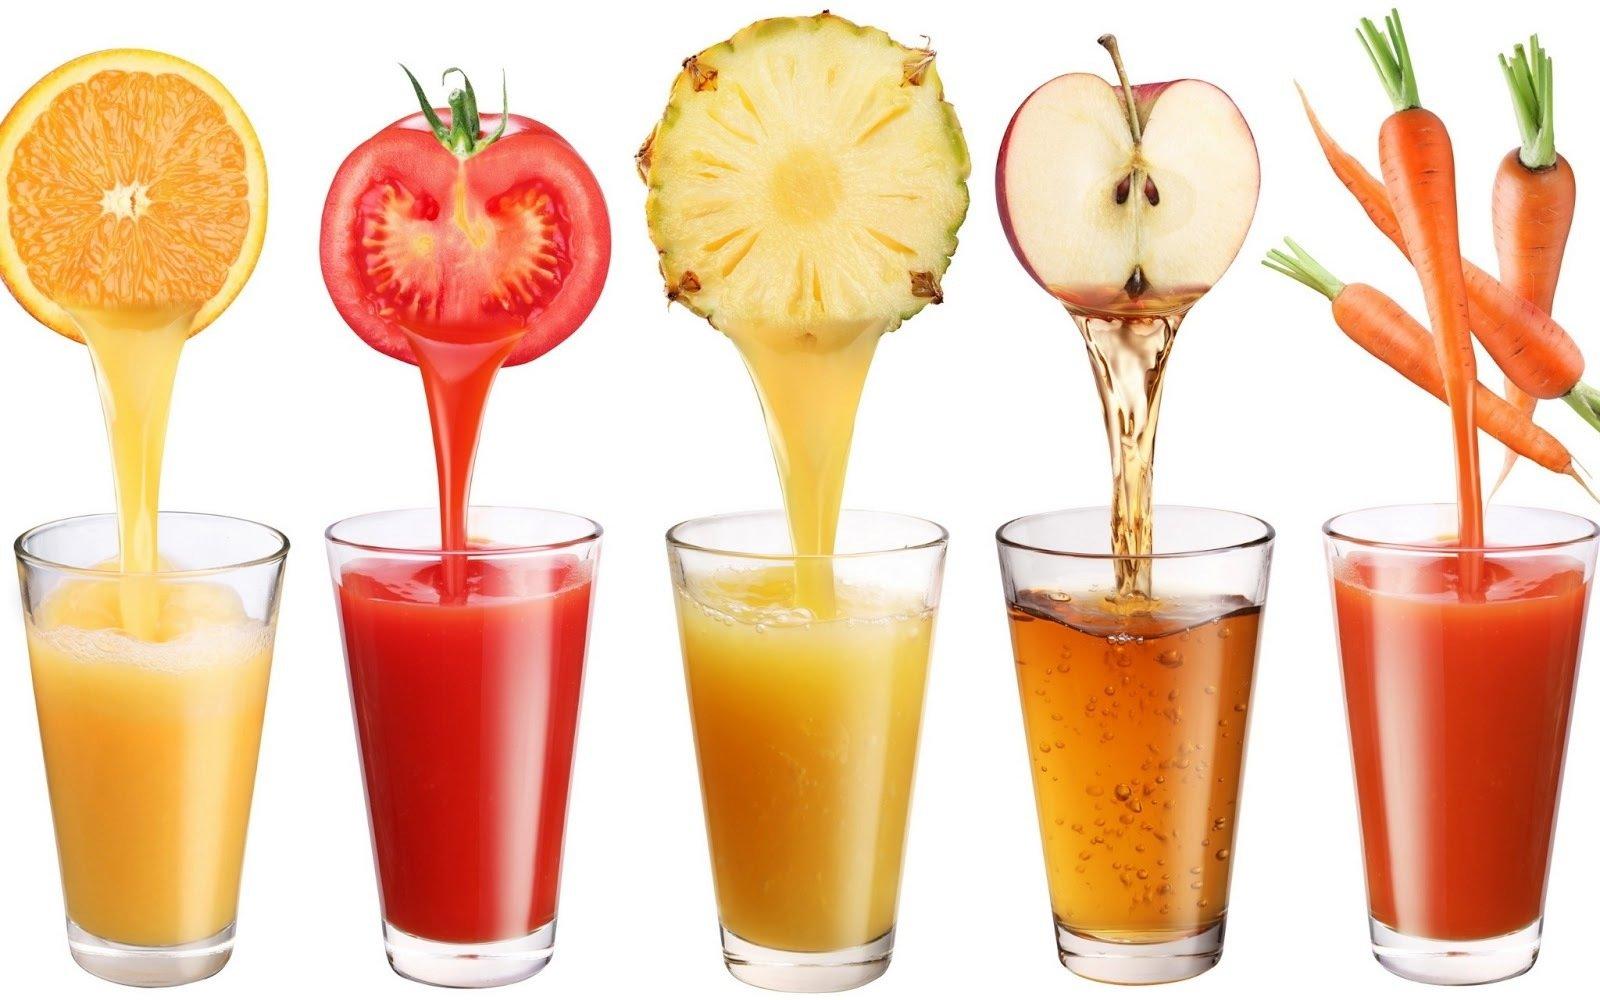 1 cốc sinh tố trái cây mỗi ngày sẽ giúp bạn vui vẻ hơn đó (Nguồn: Internet).